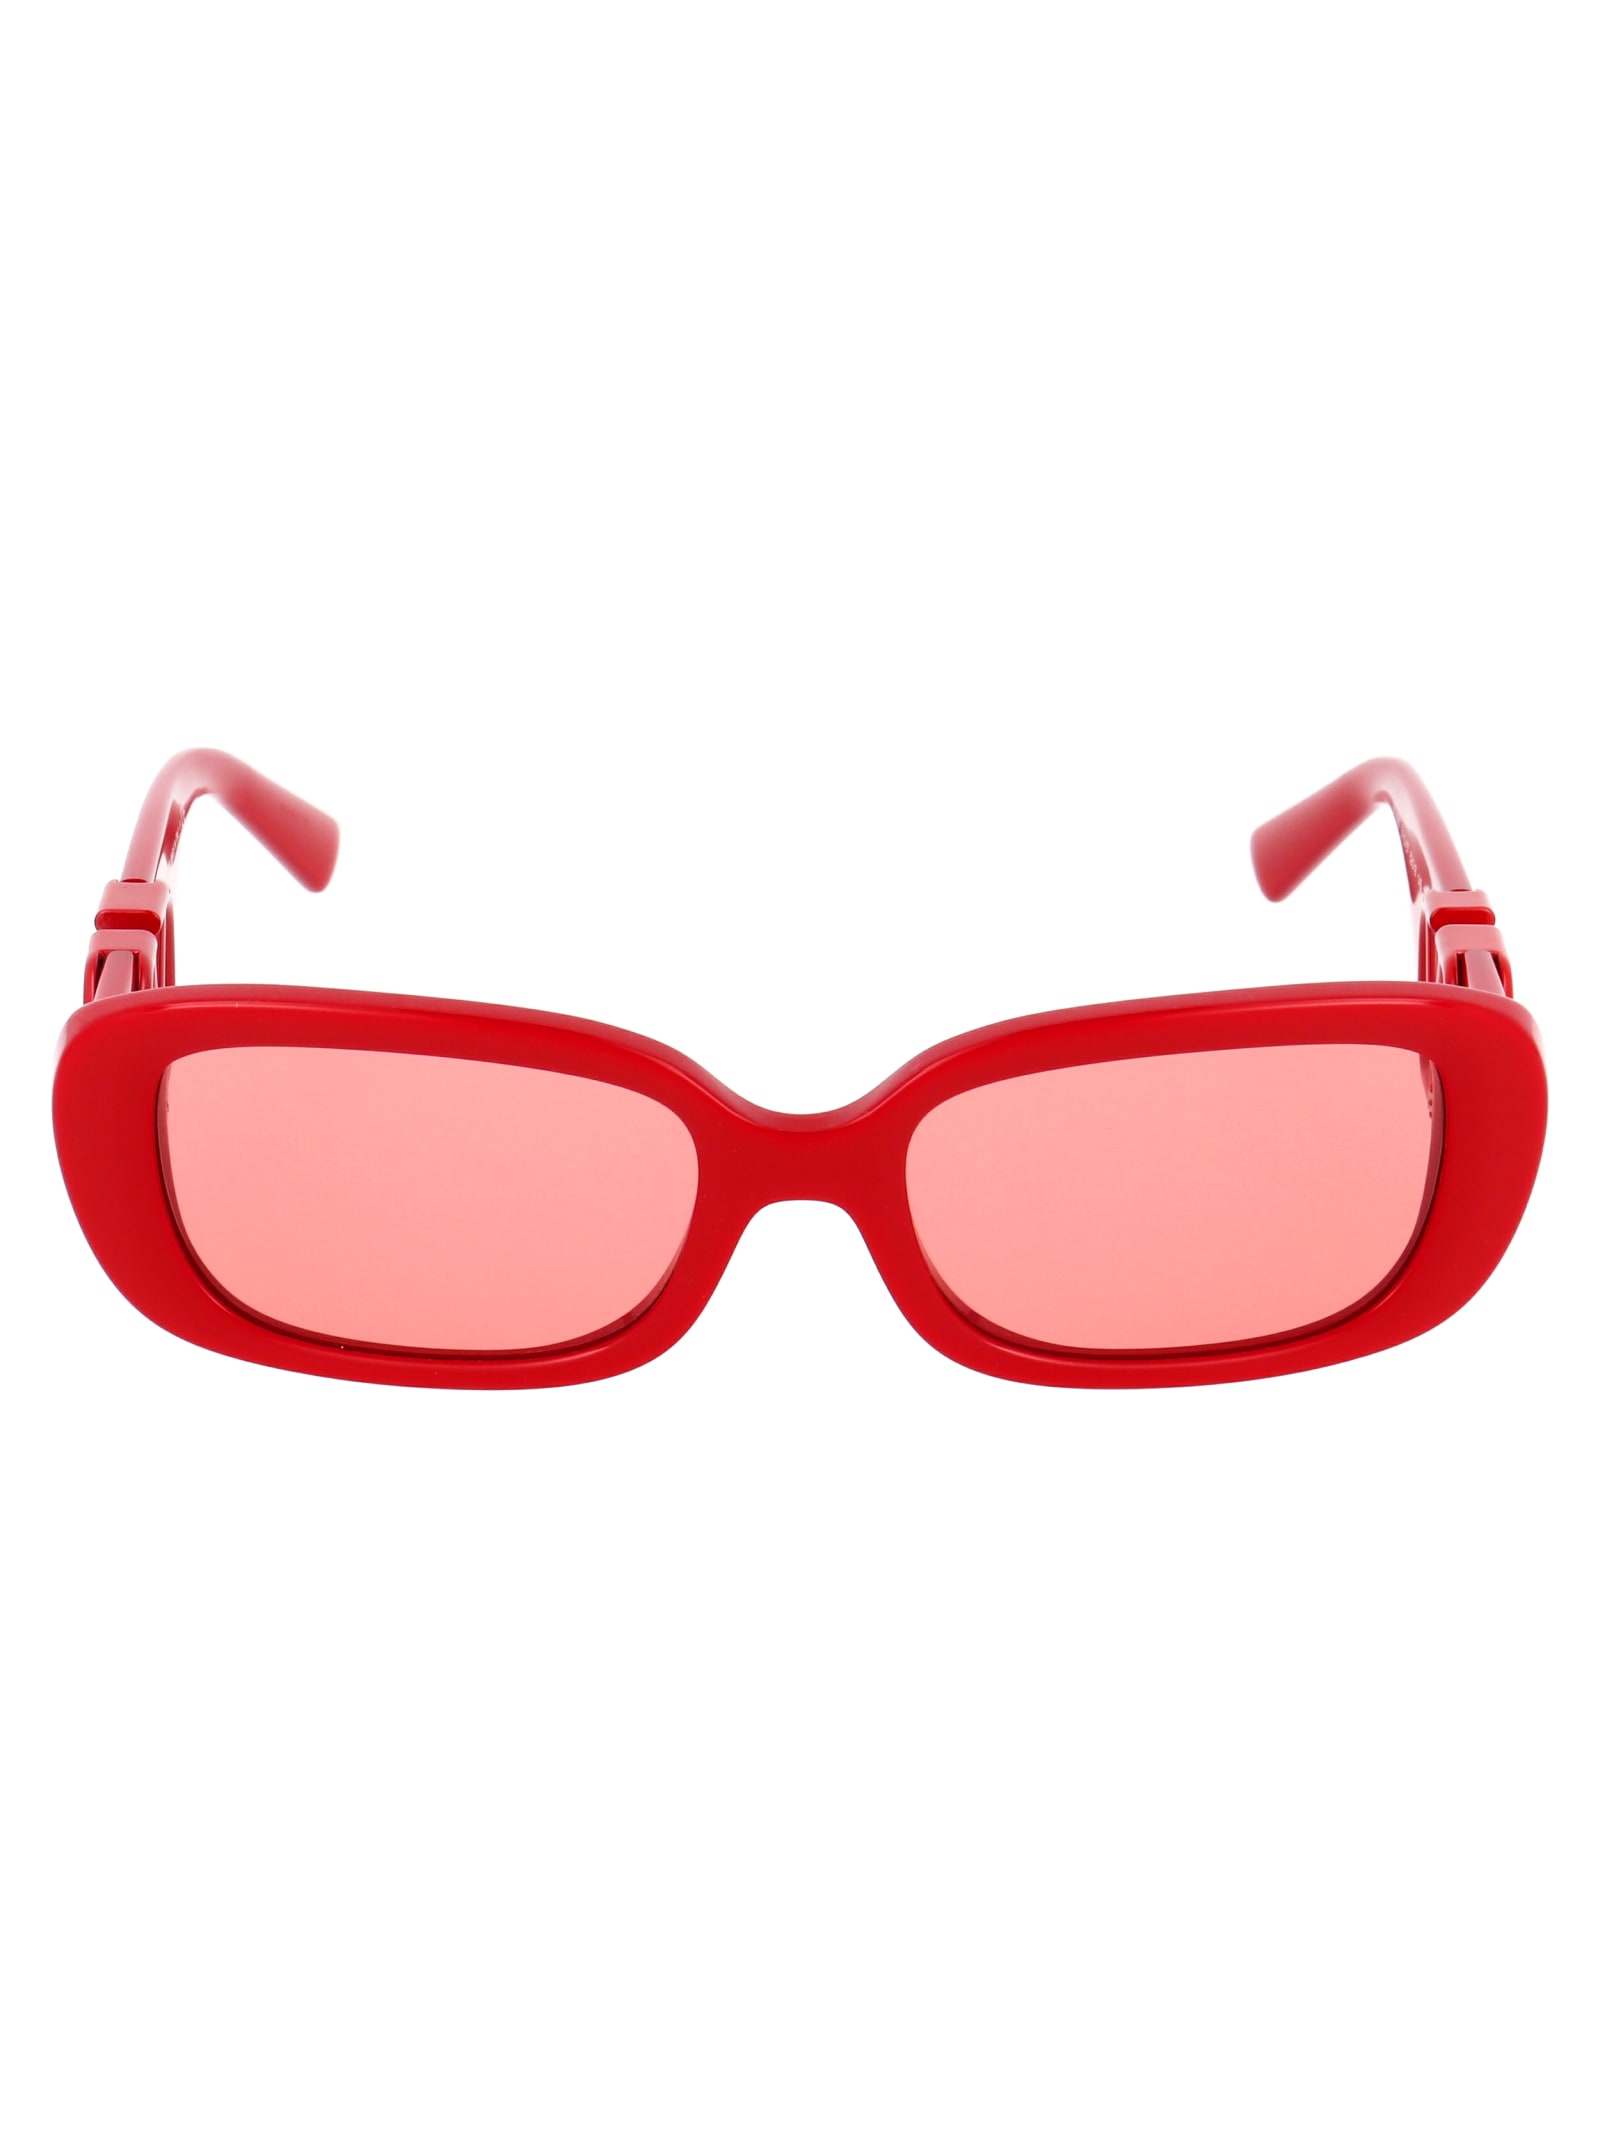 Valentino Sunglasses In Red